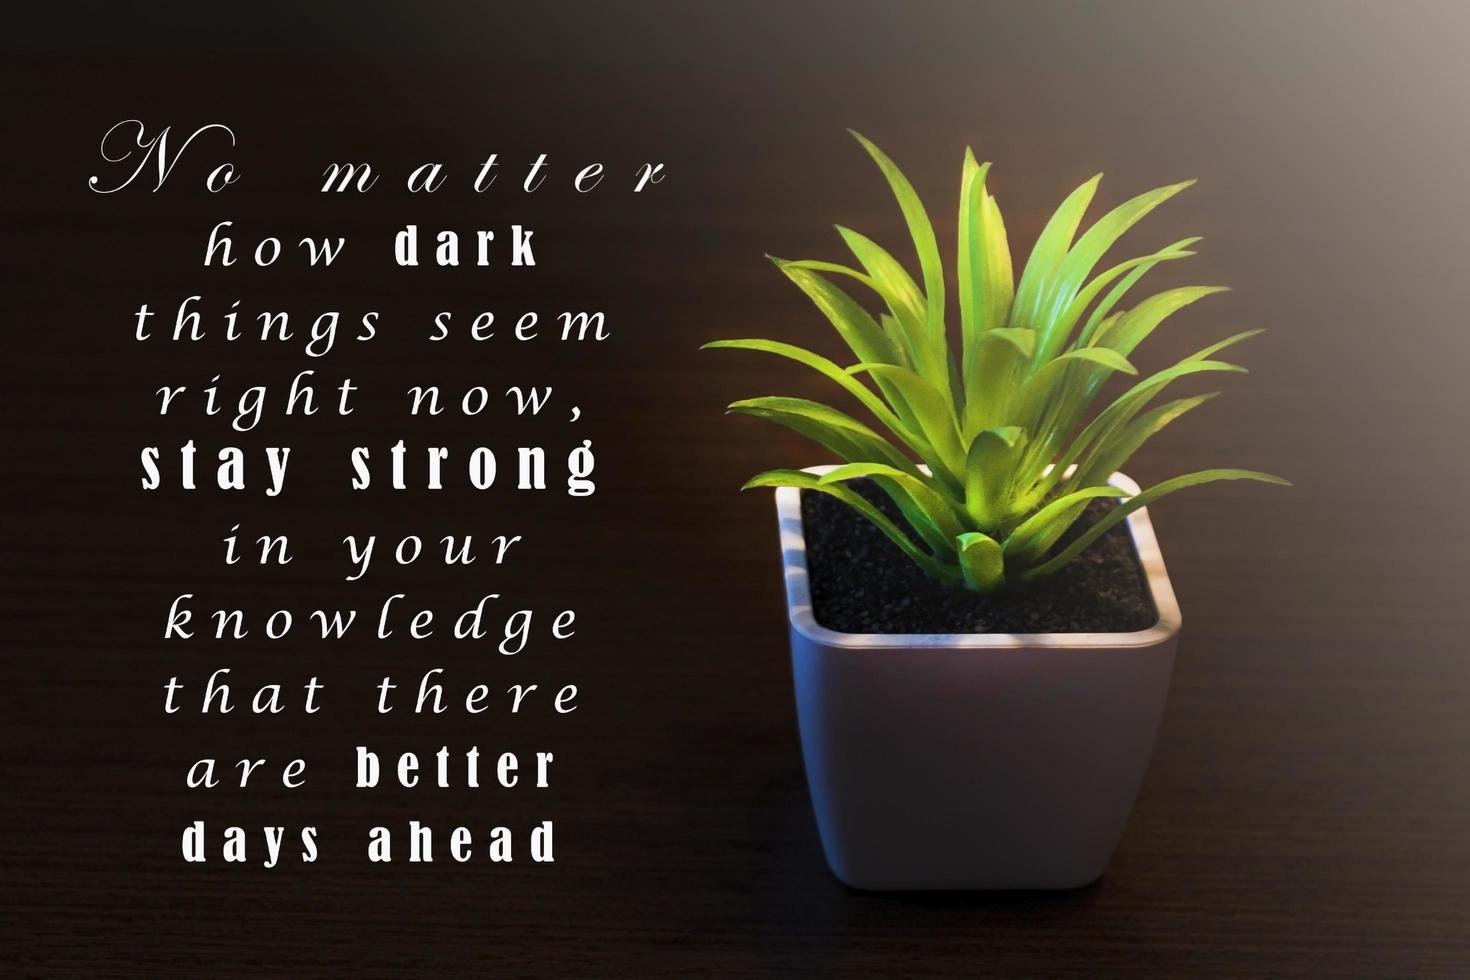 citazione motivazionale e ispiratrice su sfondo scuro con pianta in vaso foto